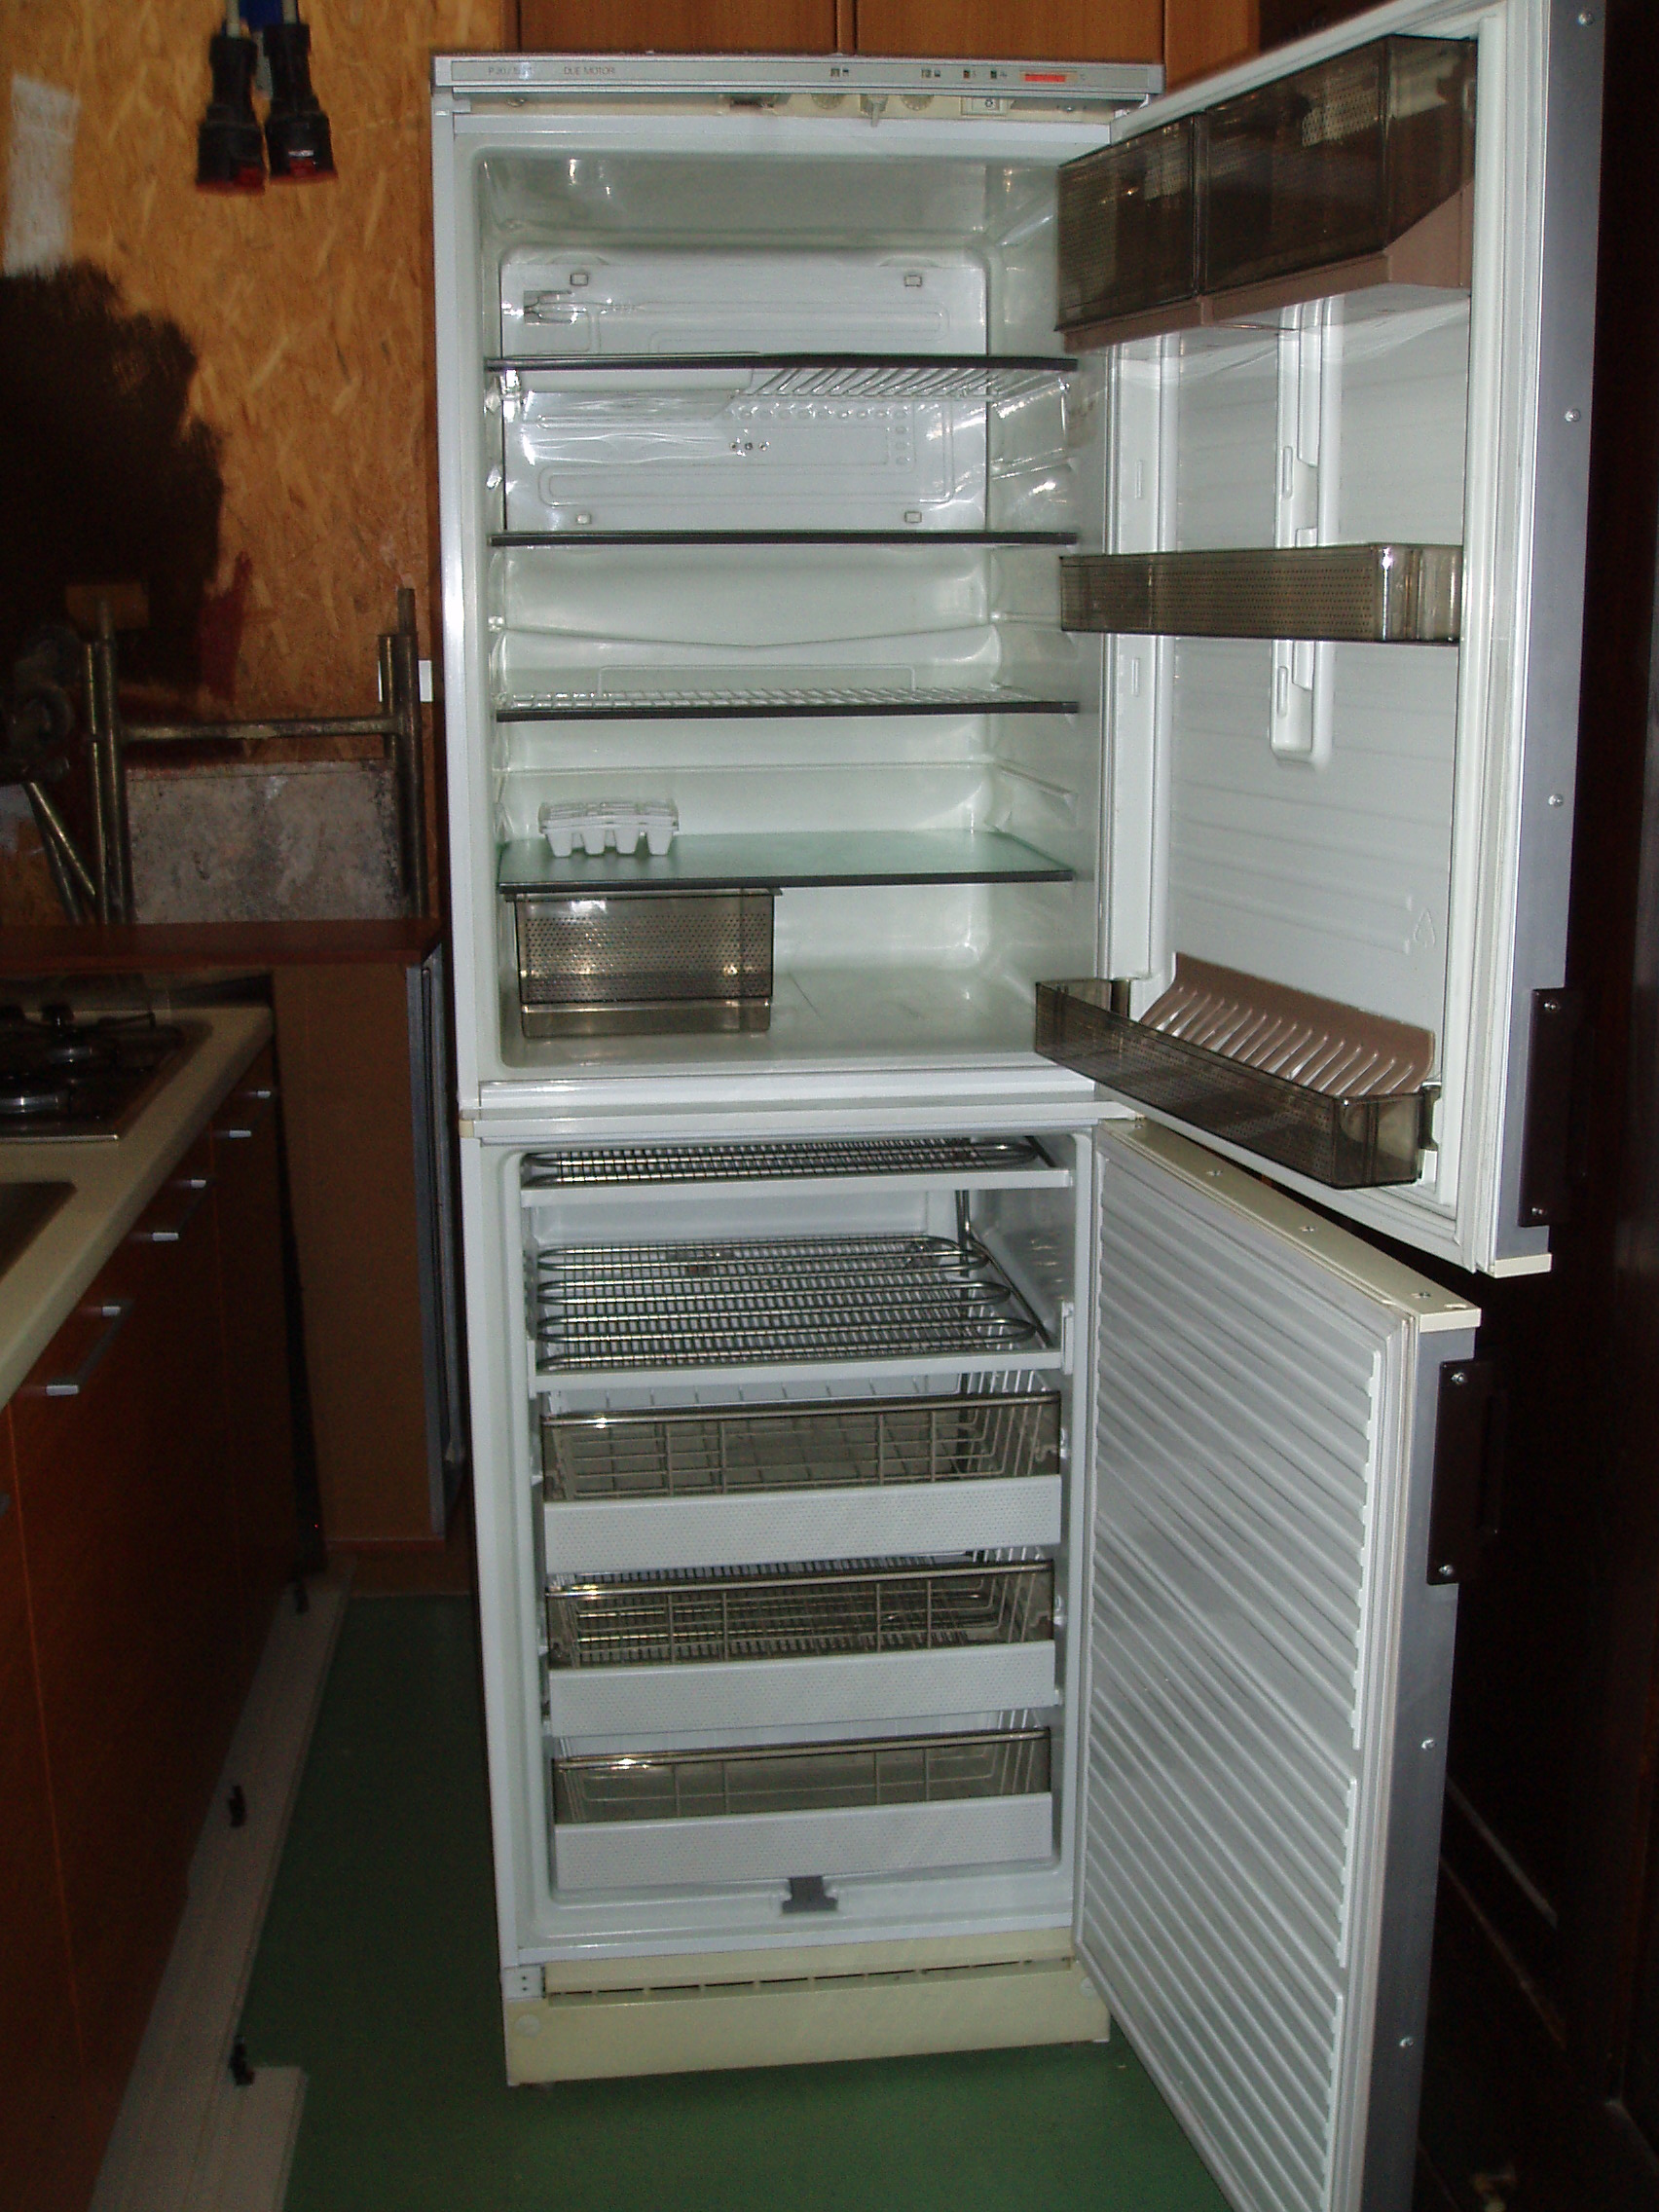 Comprare frigorifero torino usata di seconda mano - Mobili di casa